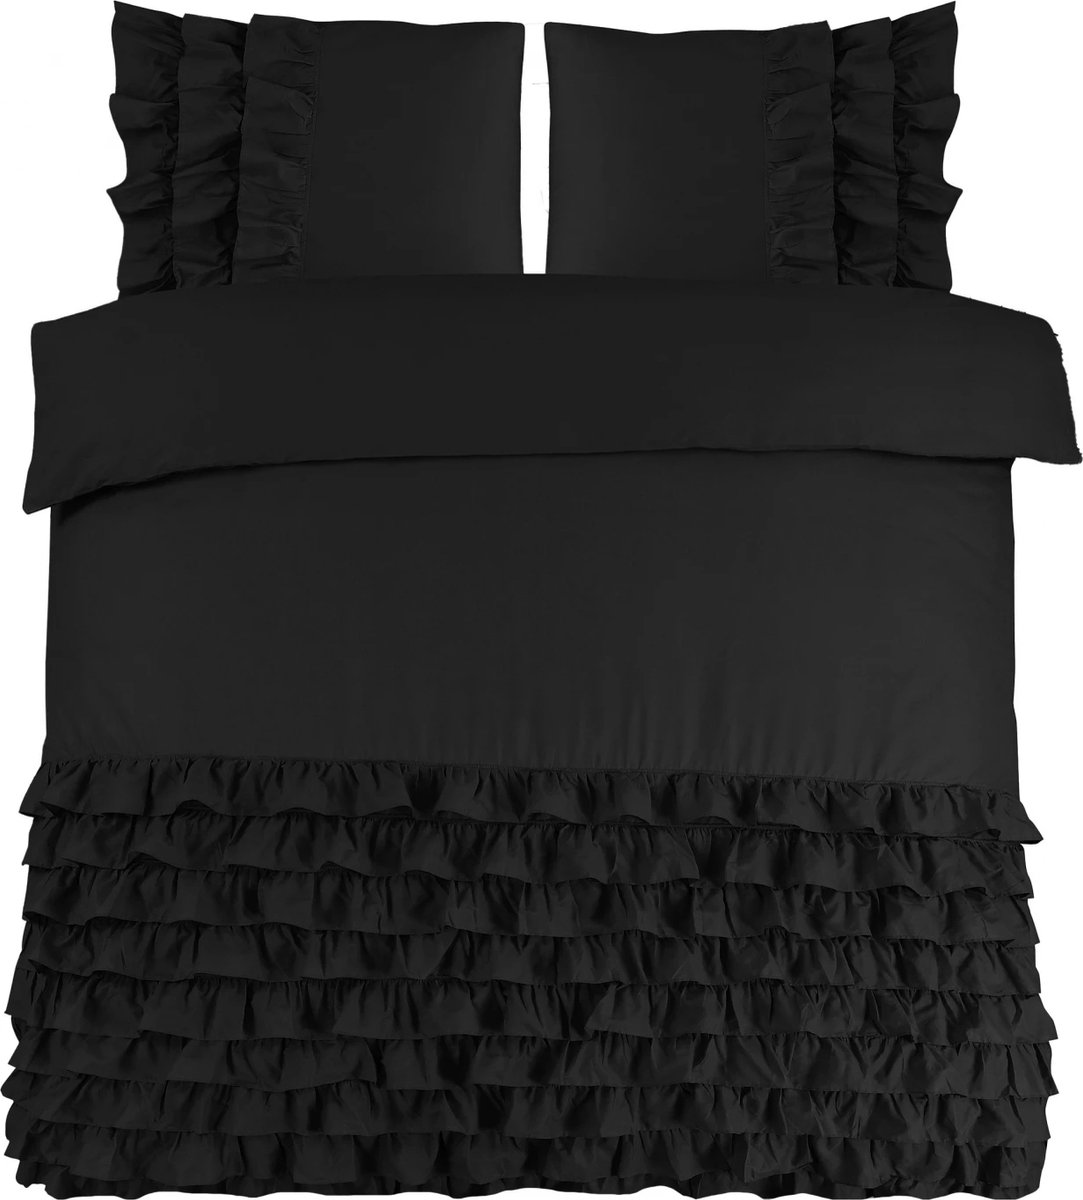 Luxe percaline katoen geweven dekbedovertrek Rosalinde zwart - 140x200/220 (eenpersoons) - fijne kwaliteit - zacht en ademend - stijlvolle uitstraling - met handige drukknopen